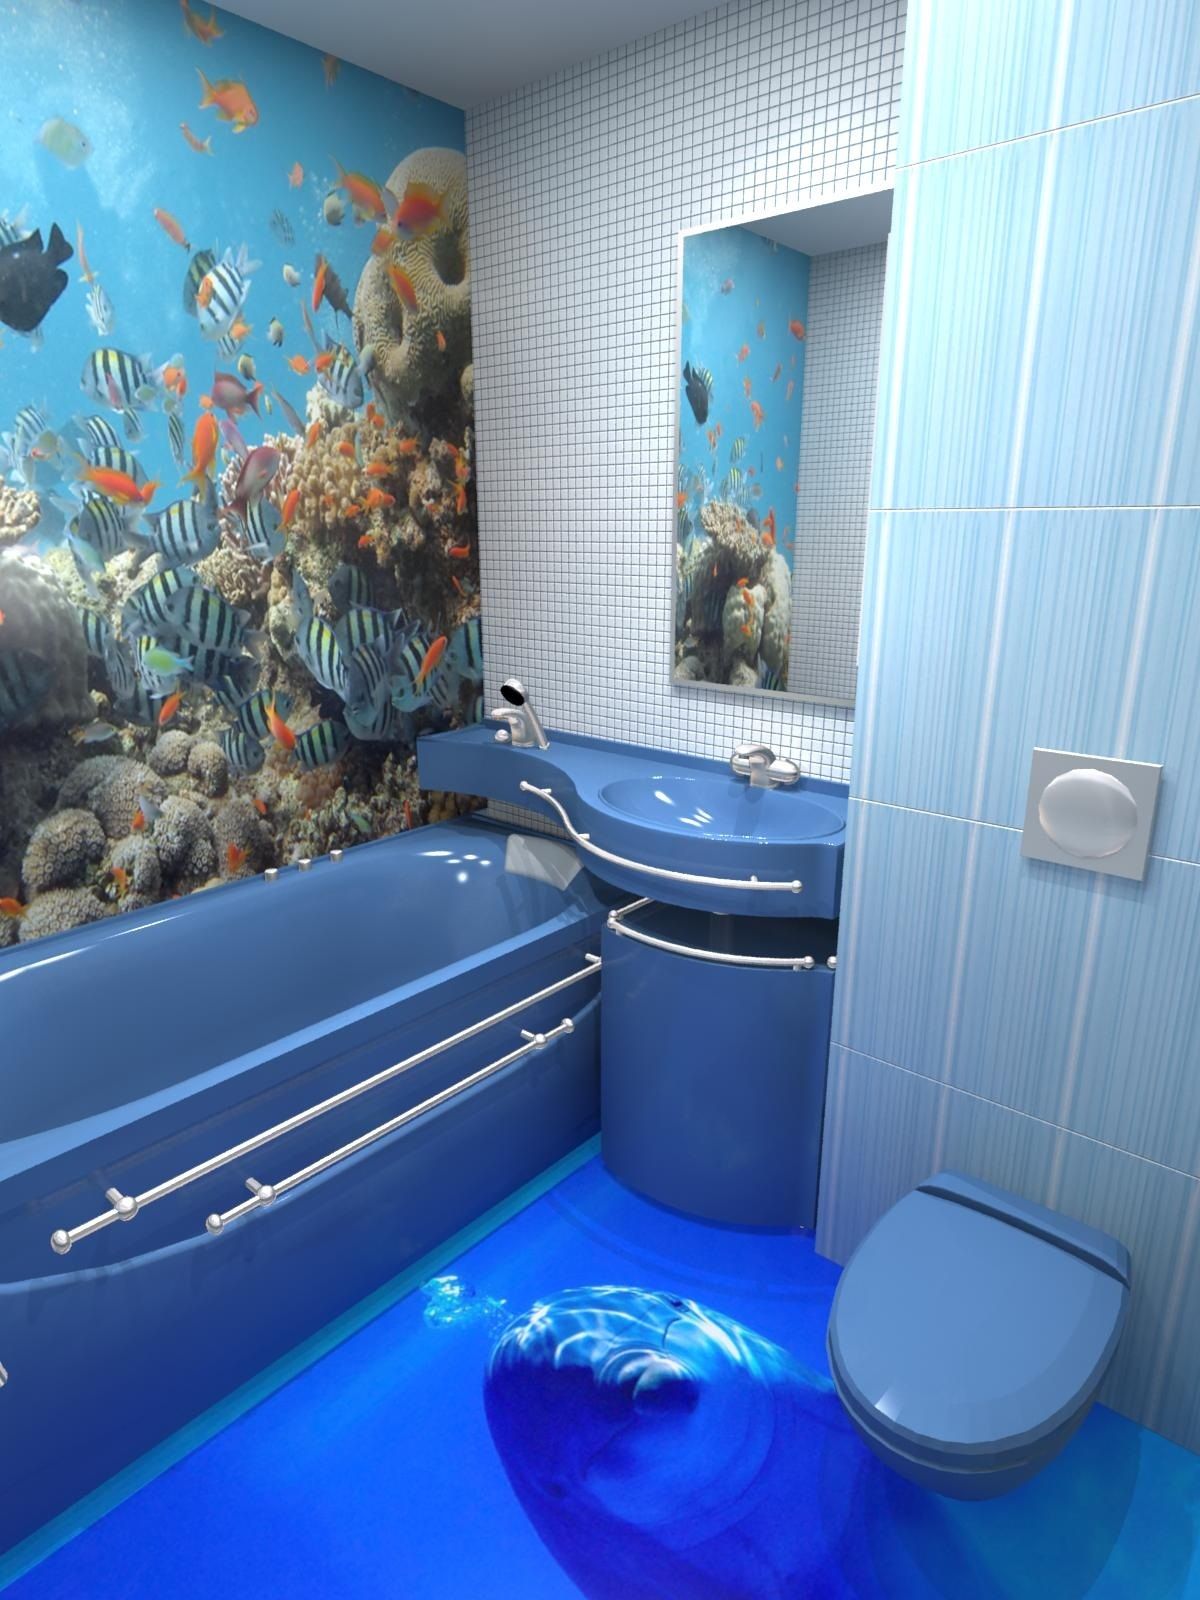 Необычный морской интерьер в ванной